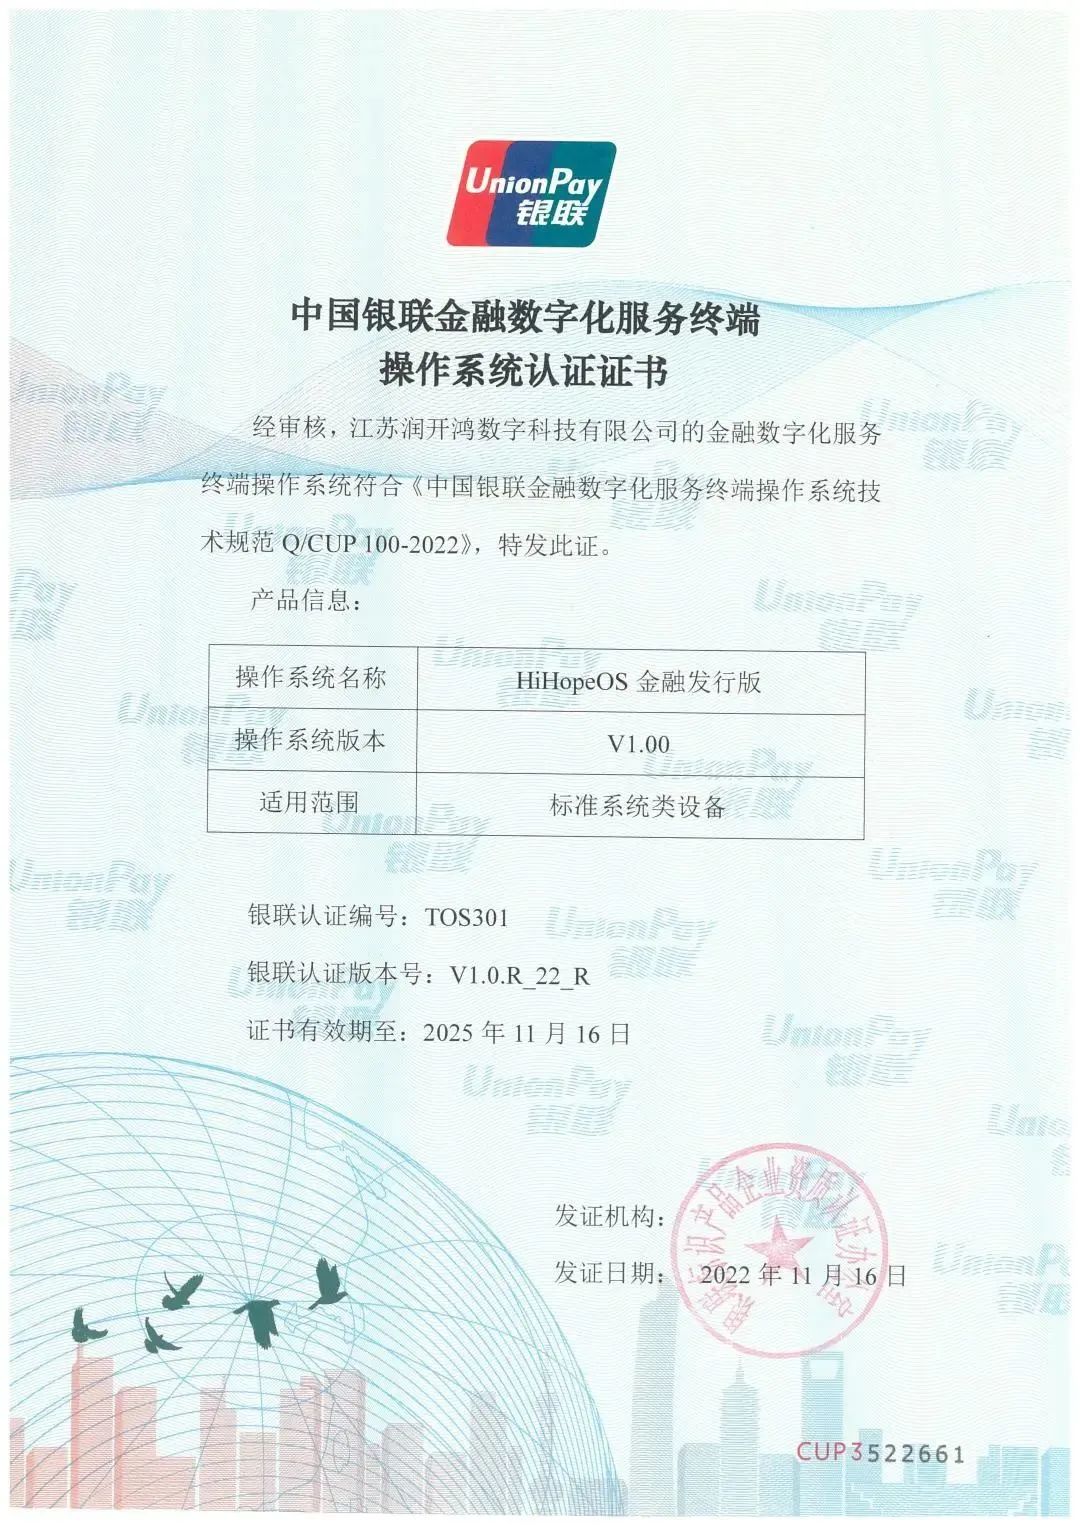 润和软件获颁首张中国银联金融数字化服务终端操作系统认证证书